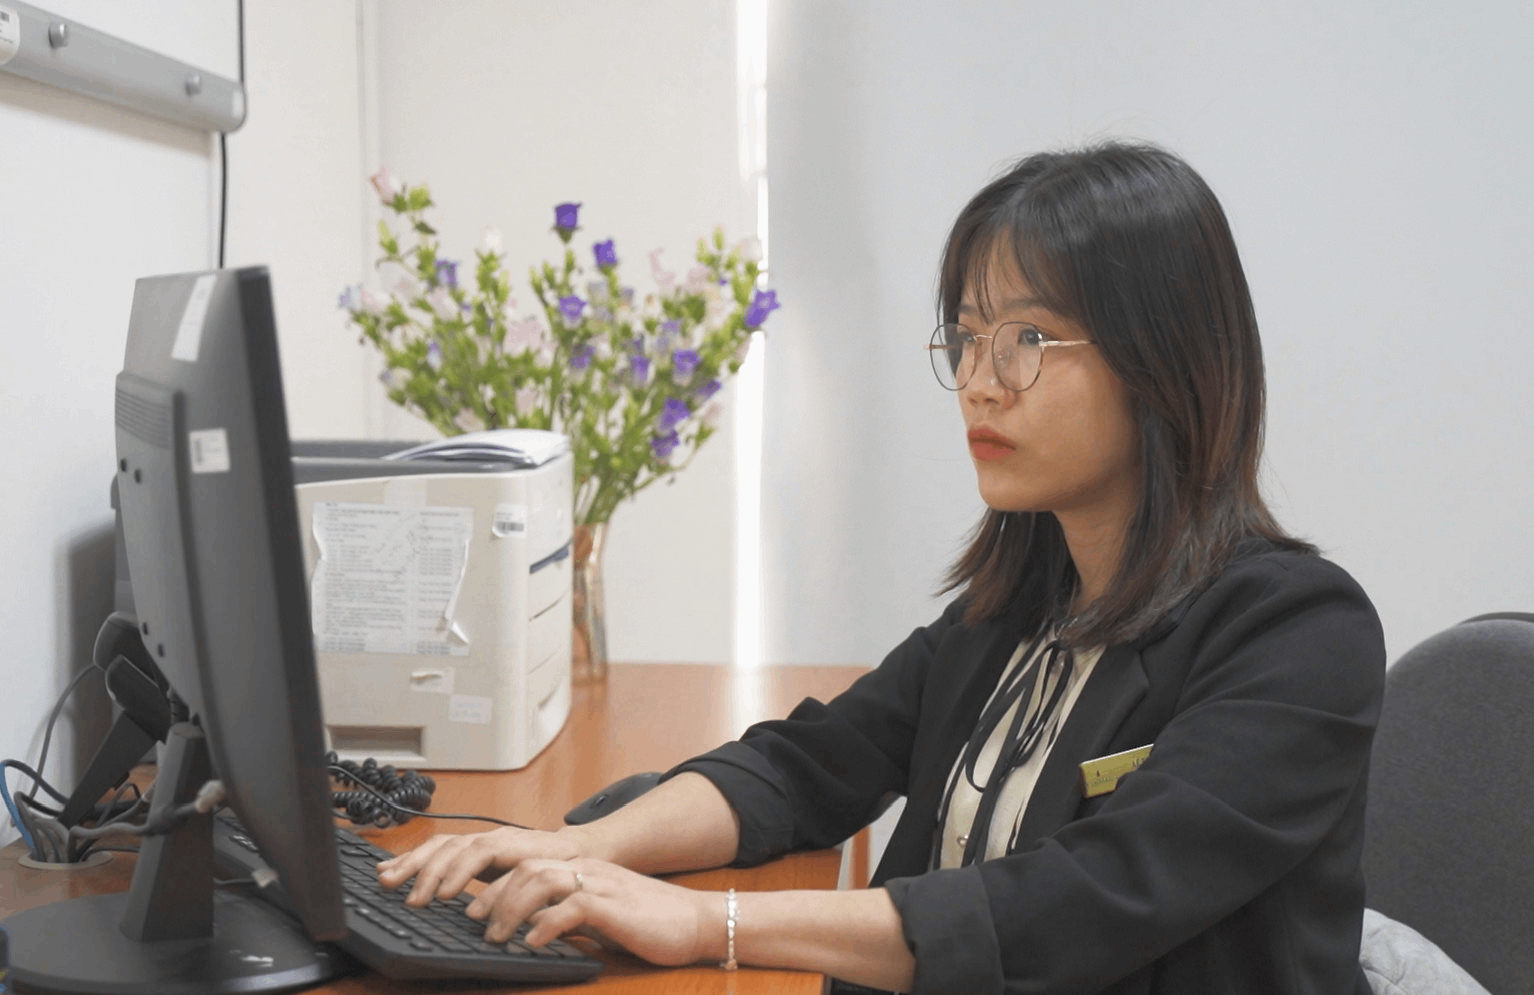 Chị Hòa hiện đang công tác tại Vinmec Times City, lan tỏa tinh thần tích cực đến các bệnh nhân mắc bệnh hiểm nghèo.